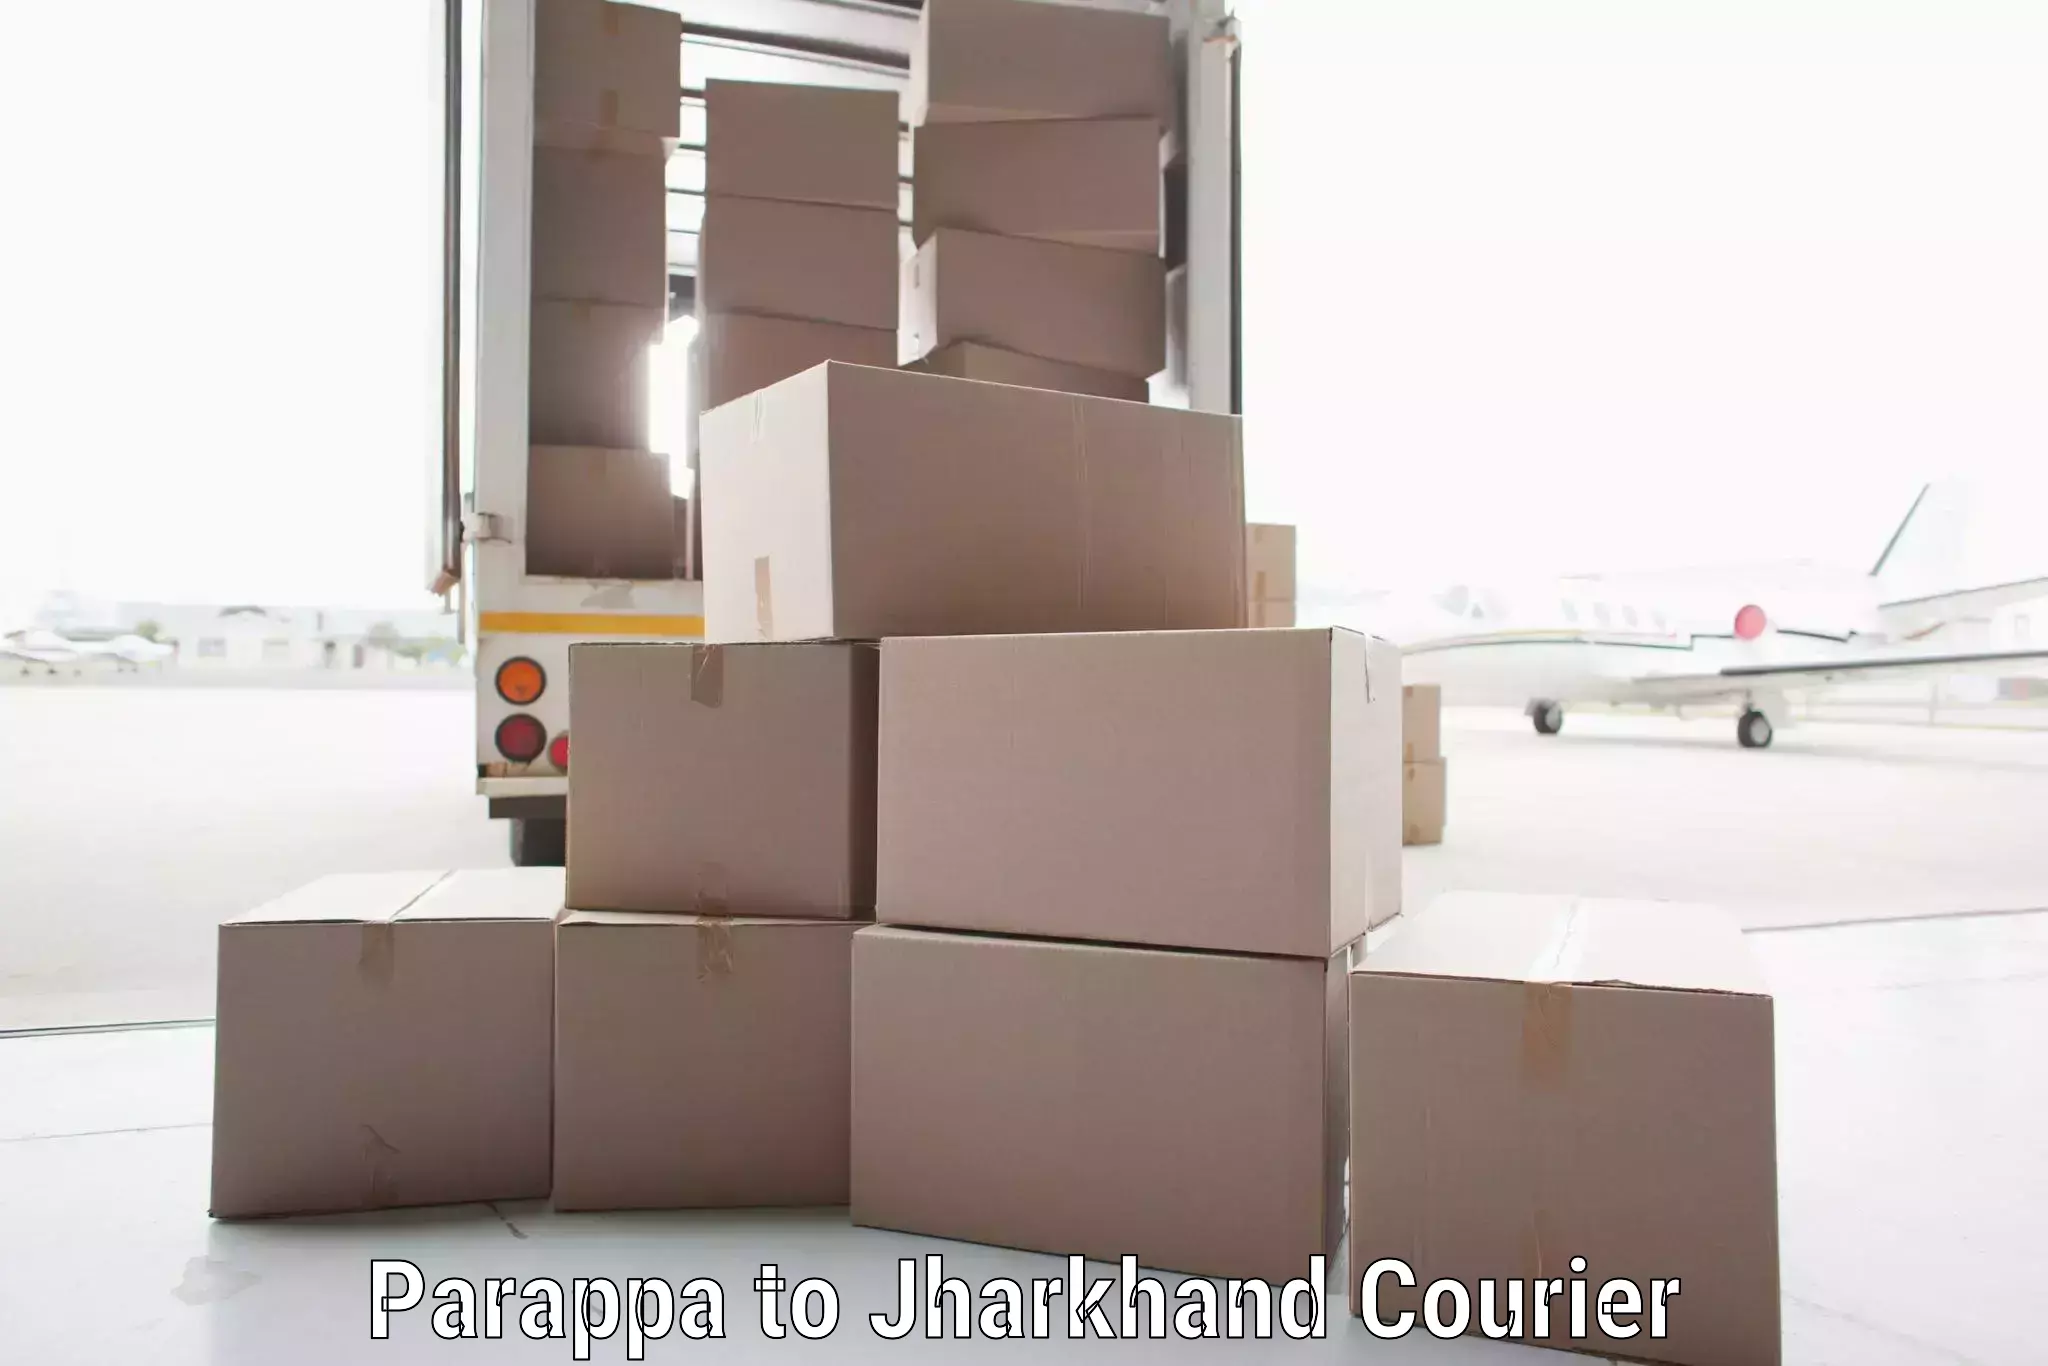 Flexible parcel services Parappa to Panki Palamu